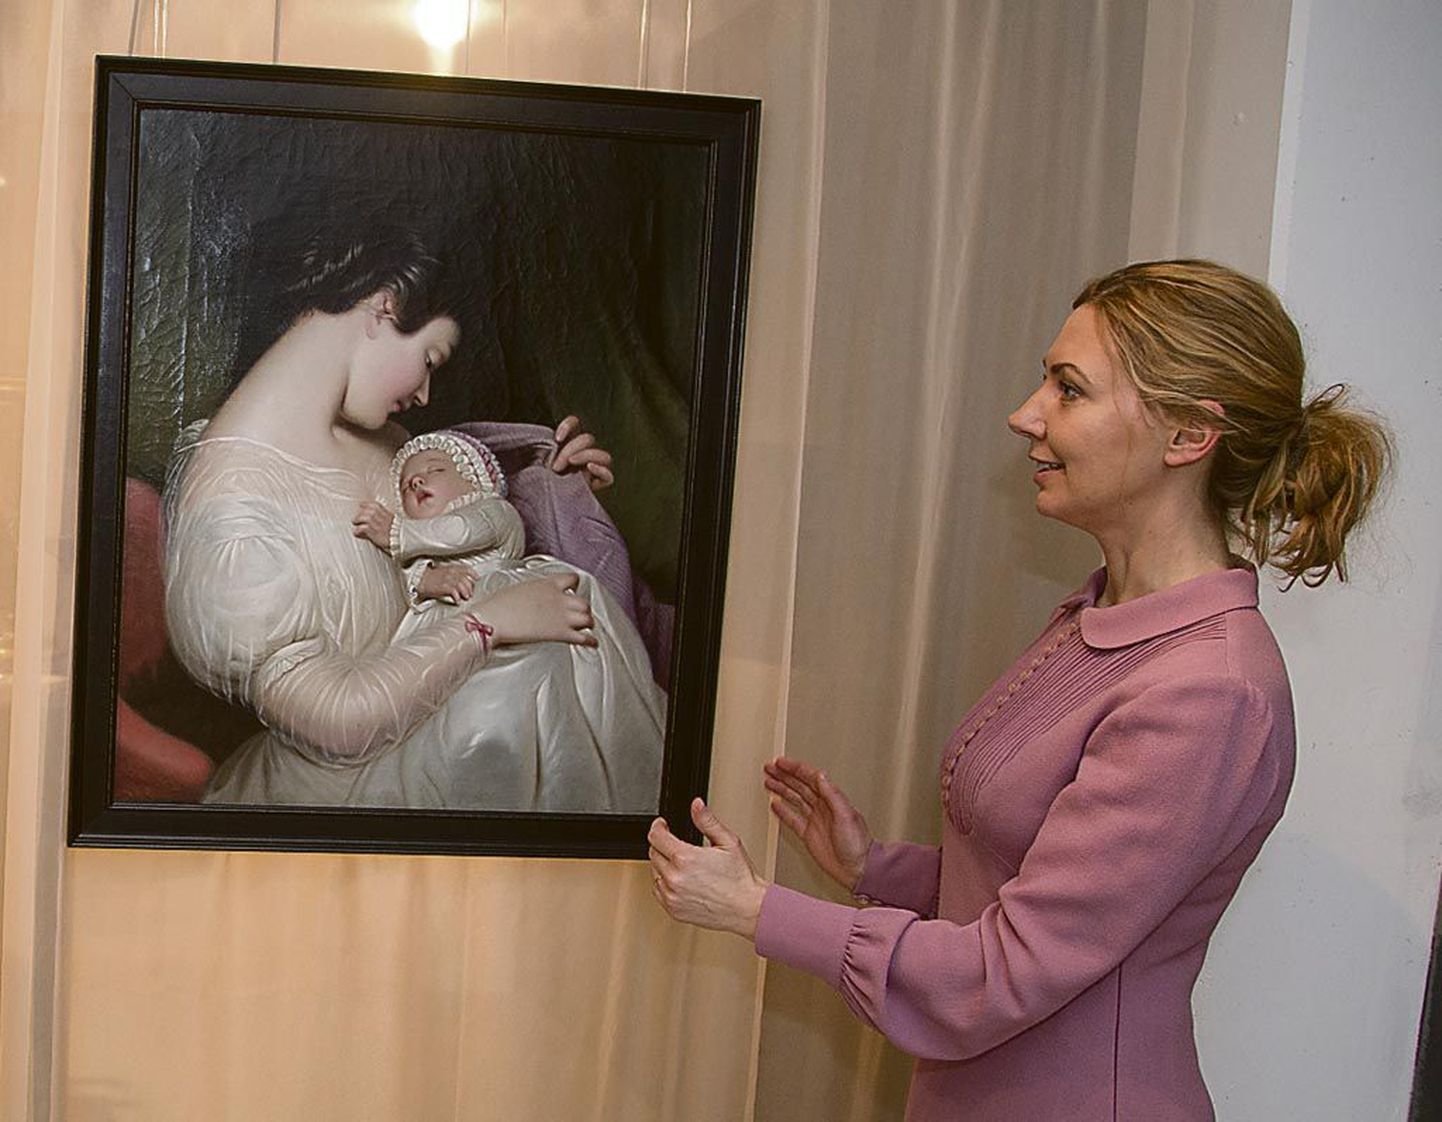 Kuraator Tiina-Mall Kreem näitab väljapaneku “Hoolitseva armastuse” osas tundmatu Saksa autori maali “Noor ema” (19. sajandi keskpaik). Kõik kunstiteosed kuuluvad Kadrioru kunstimuuseumi kogusse.